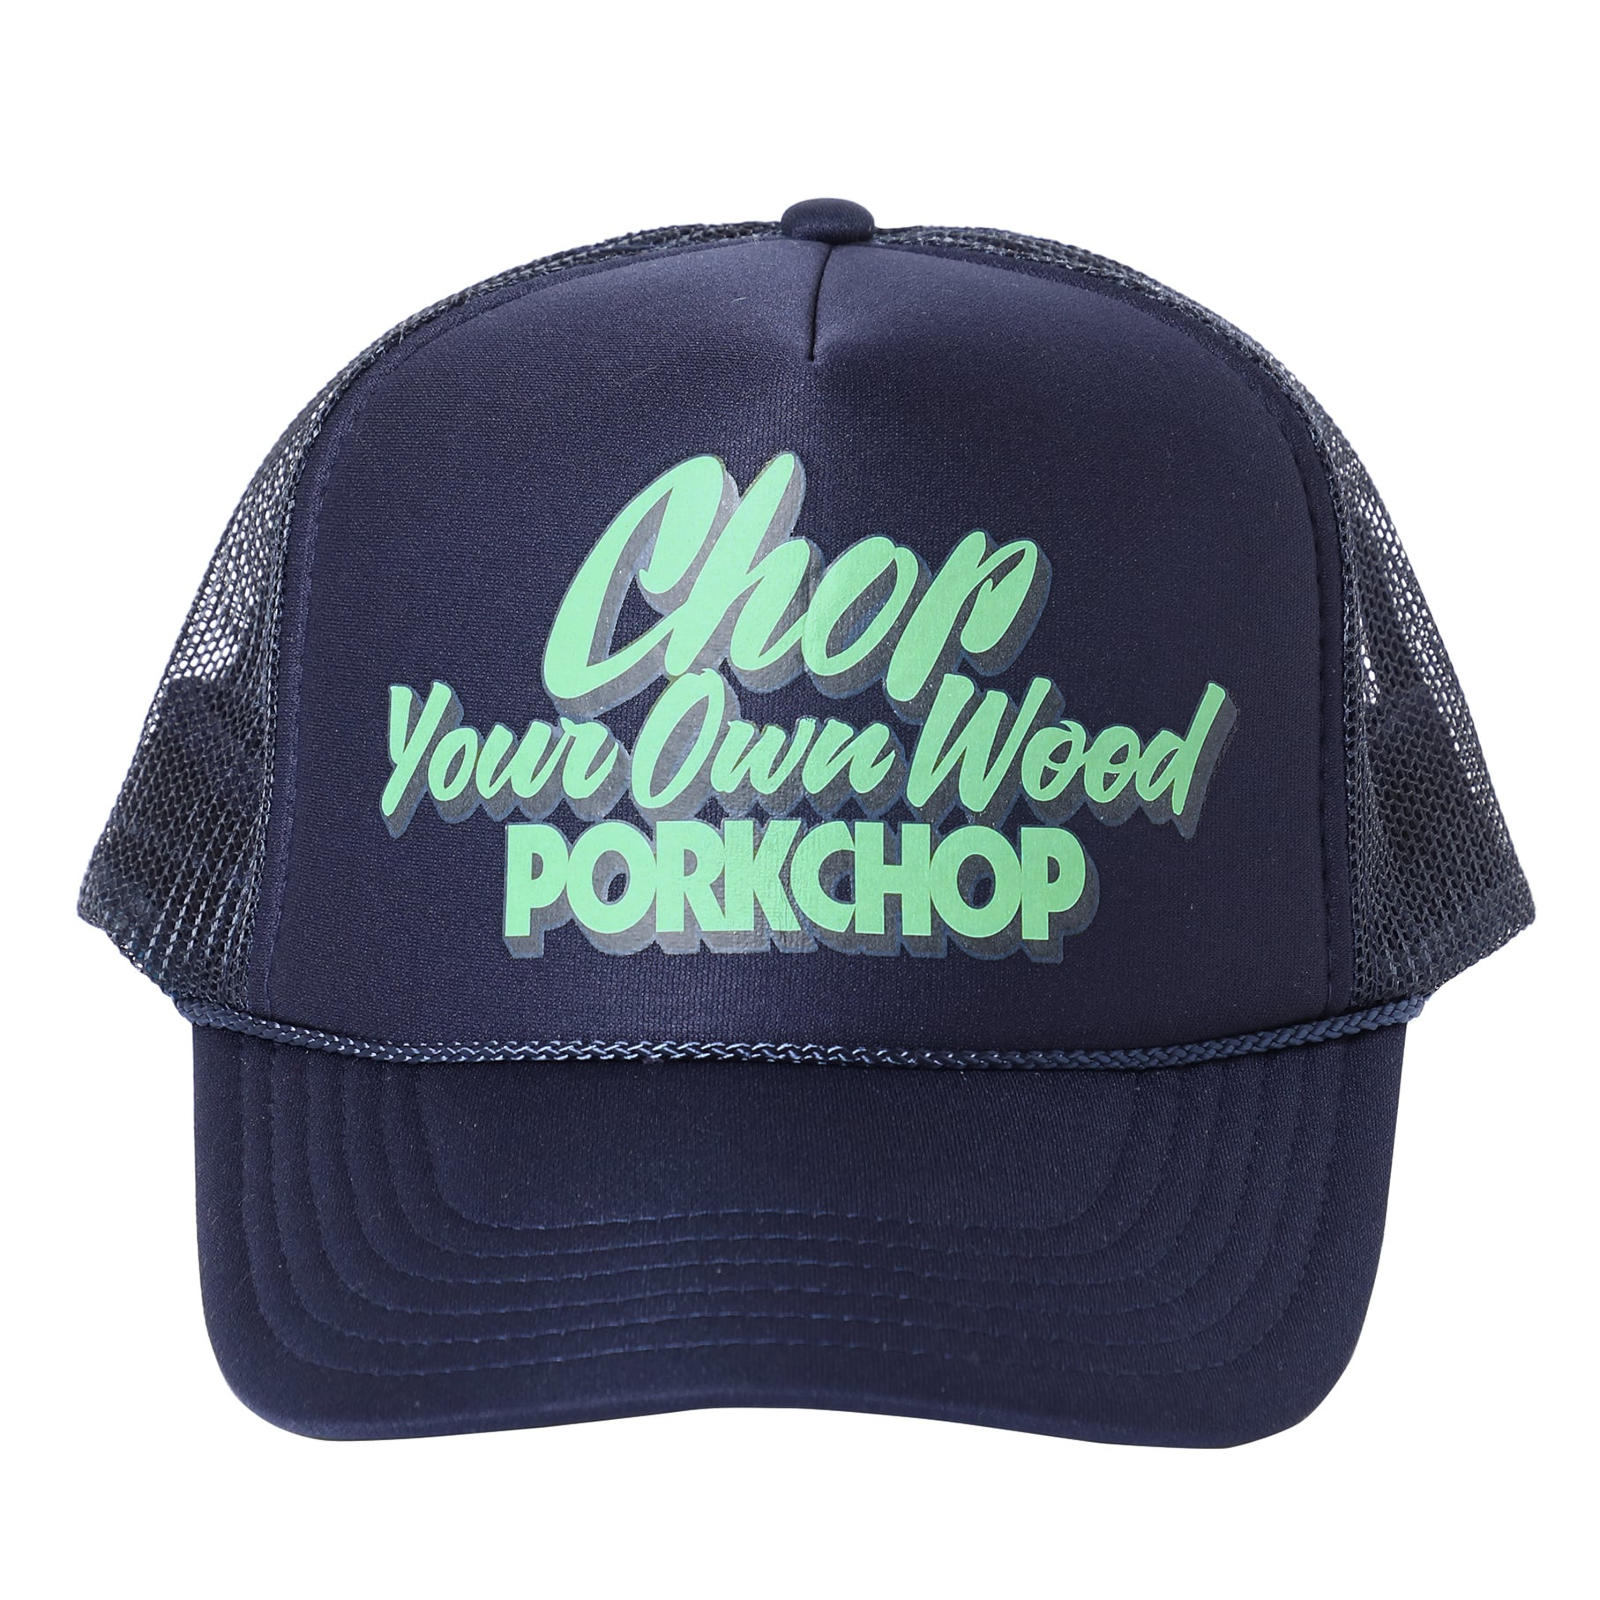 PORKCHOP GARAGE SUPPLY : CHOP YOUR OWN WOOD CAP